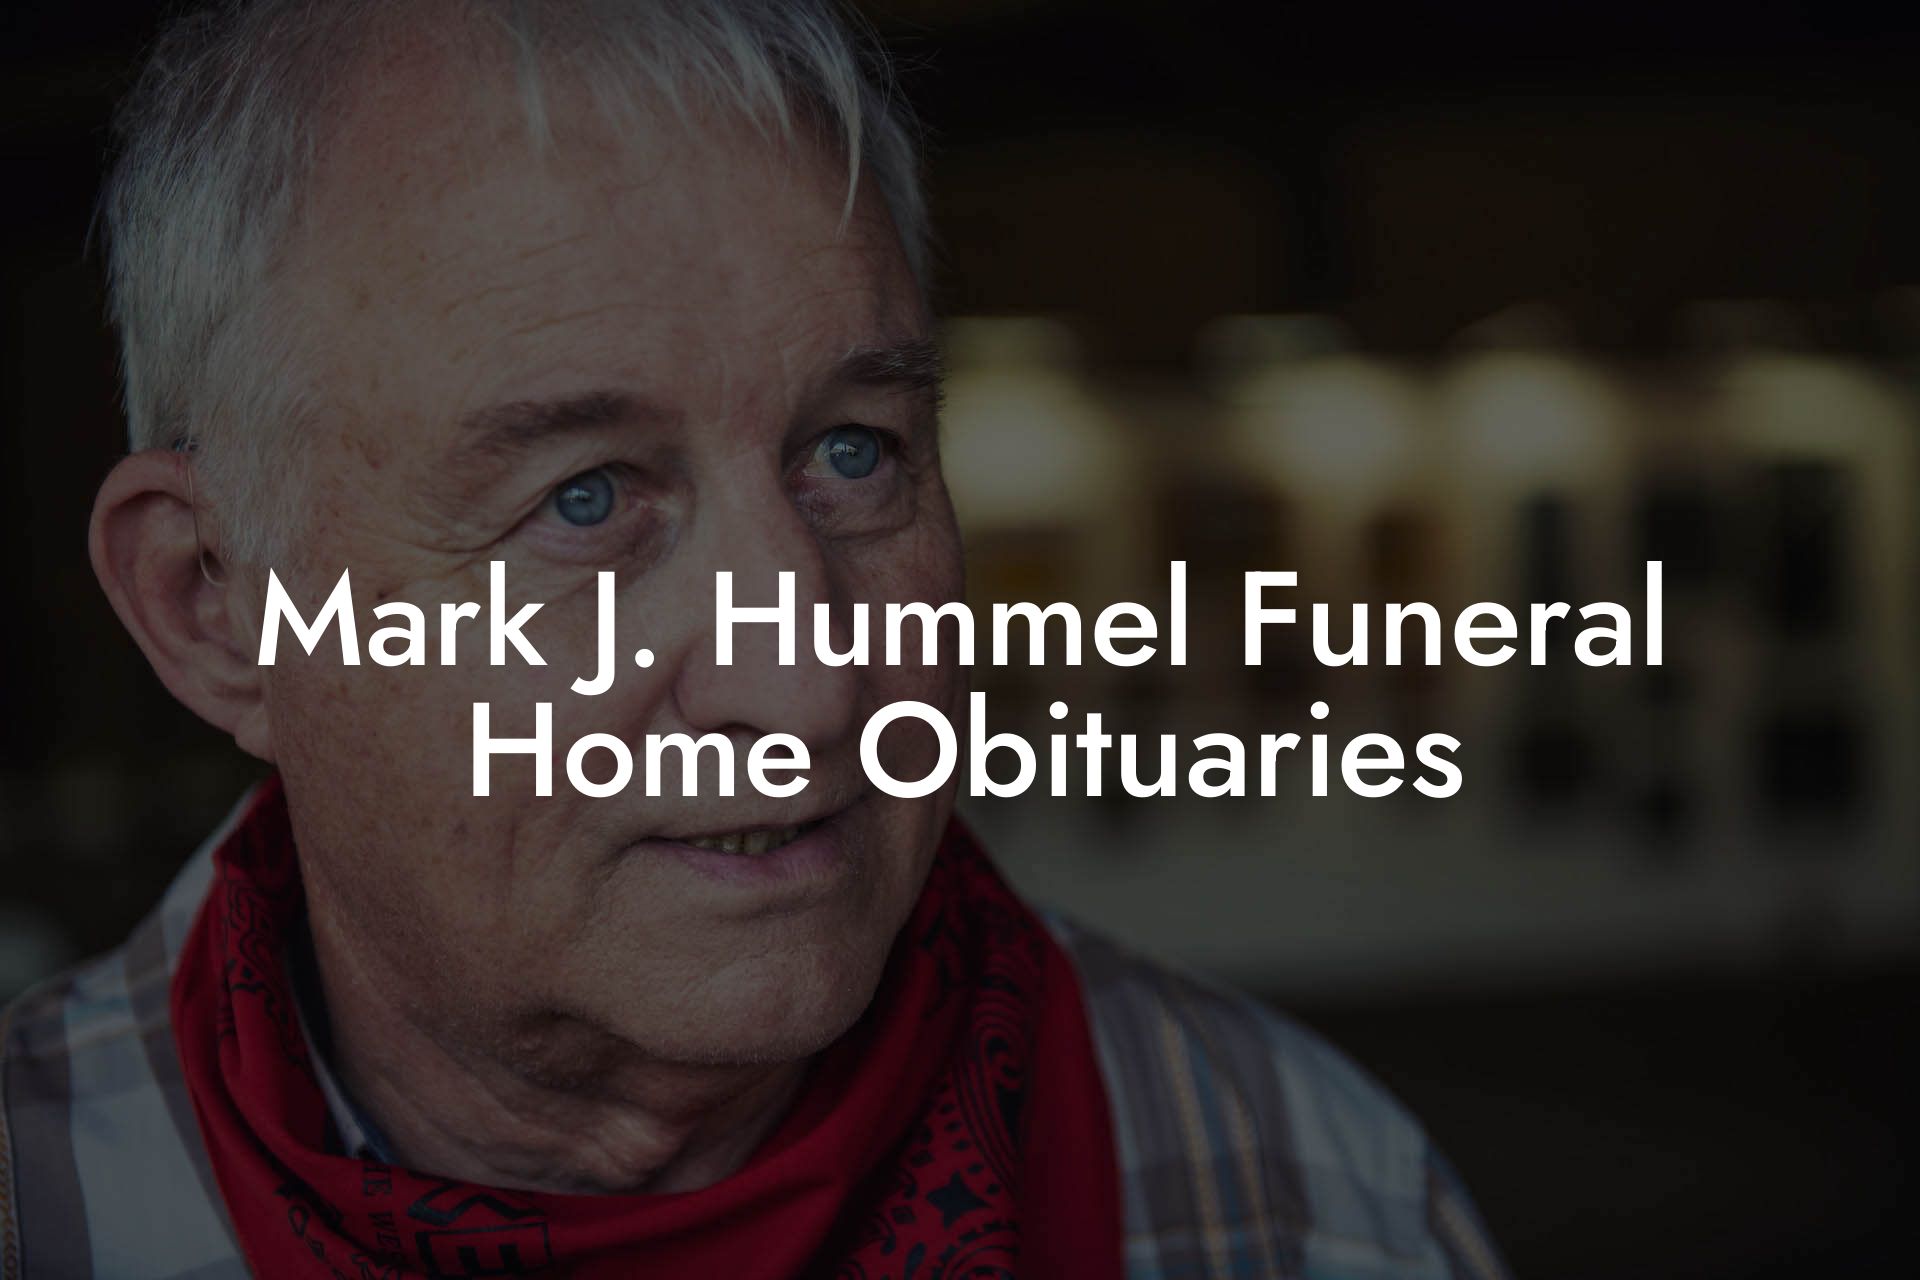 Mark J. Hummel Funeral Home Obituaries